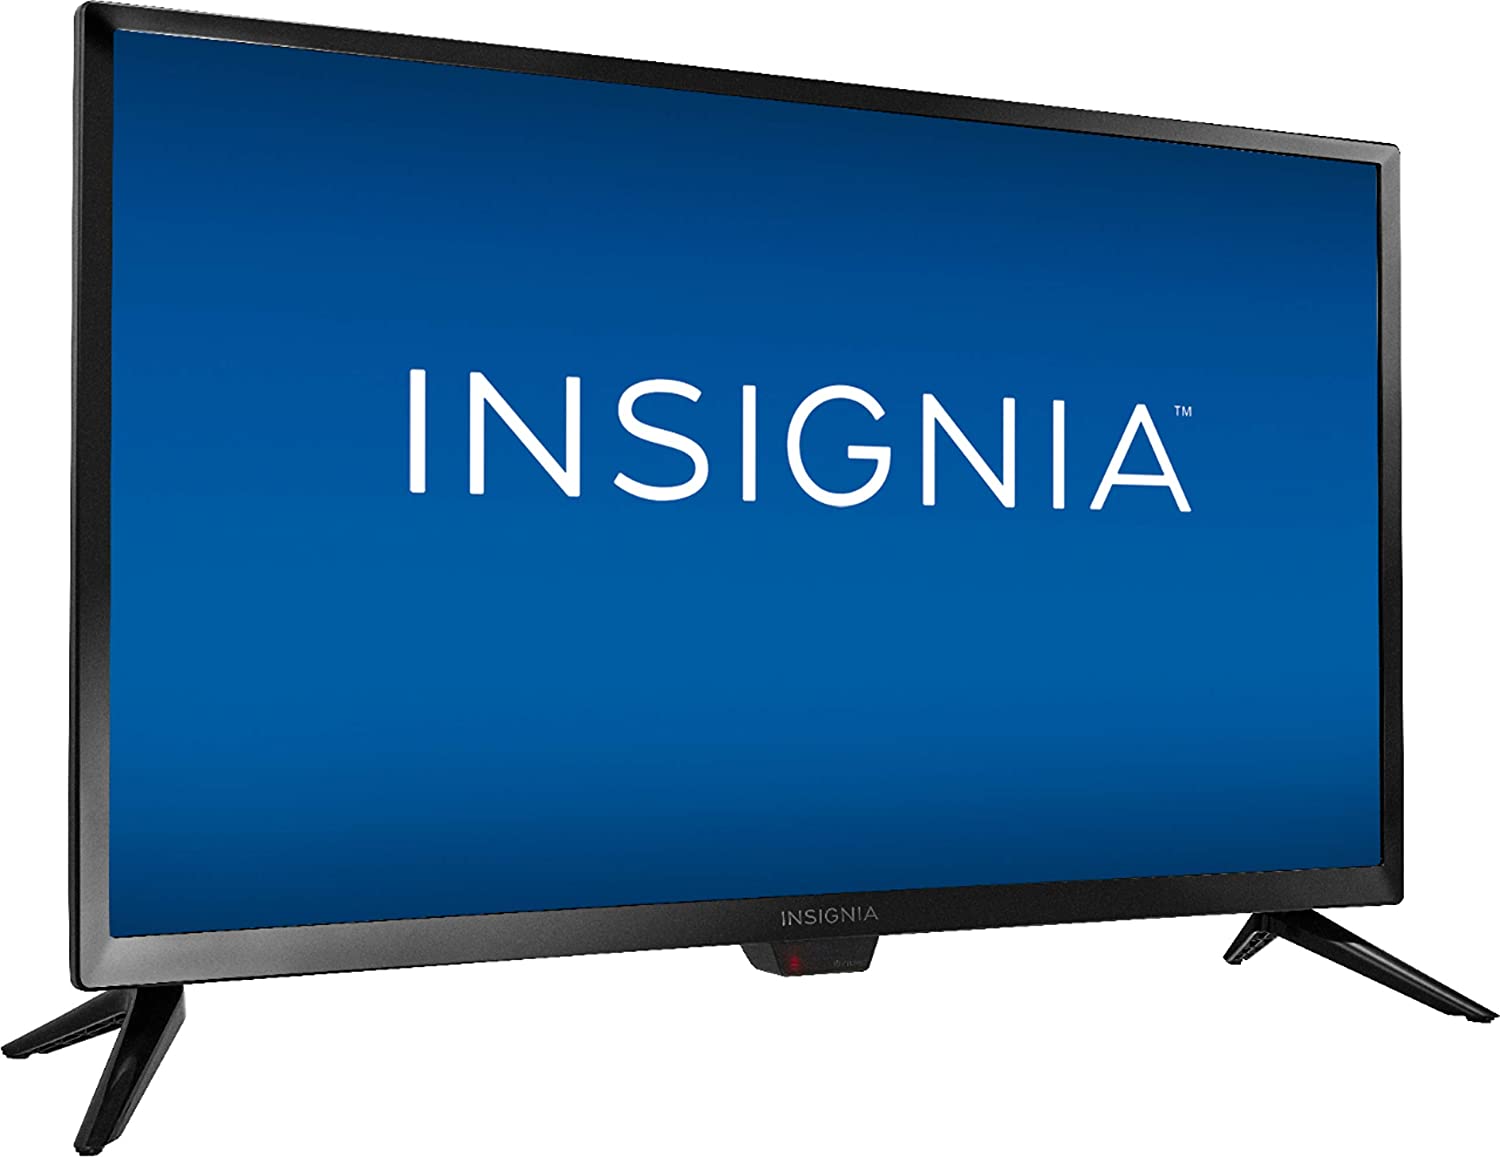 Insignia 24-inch Fire TV